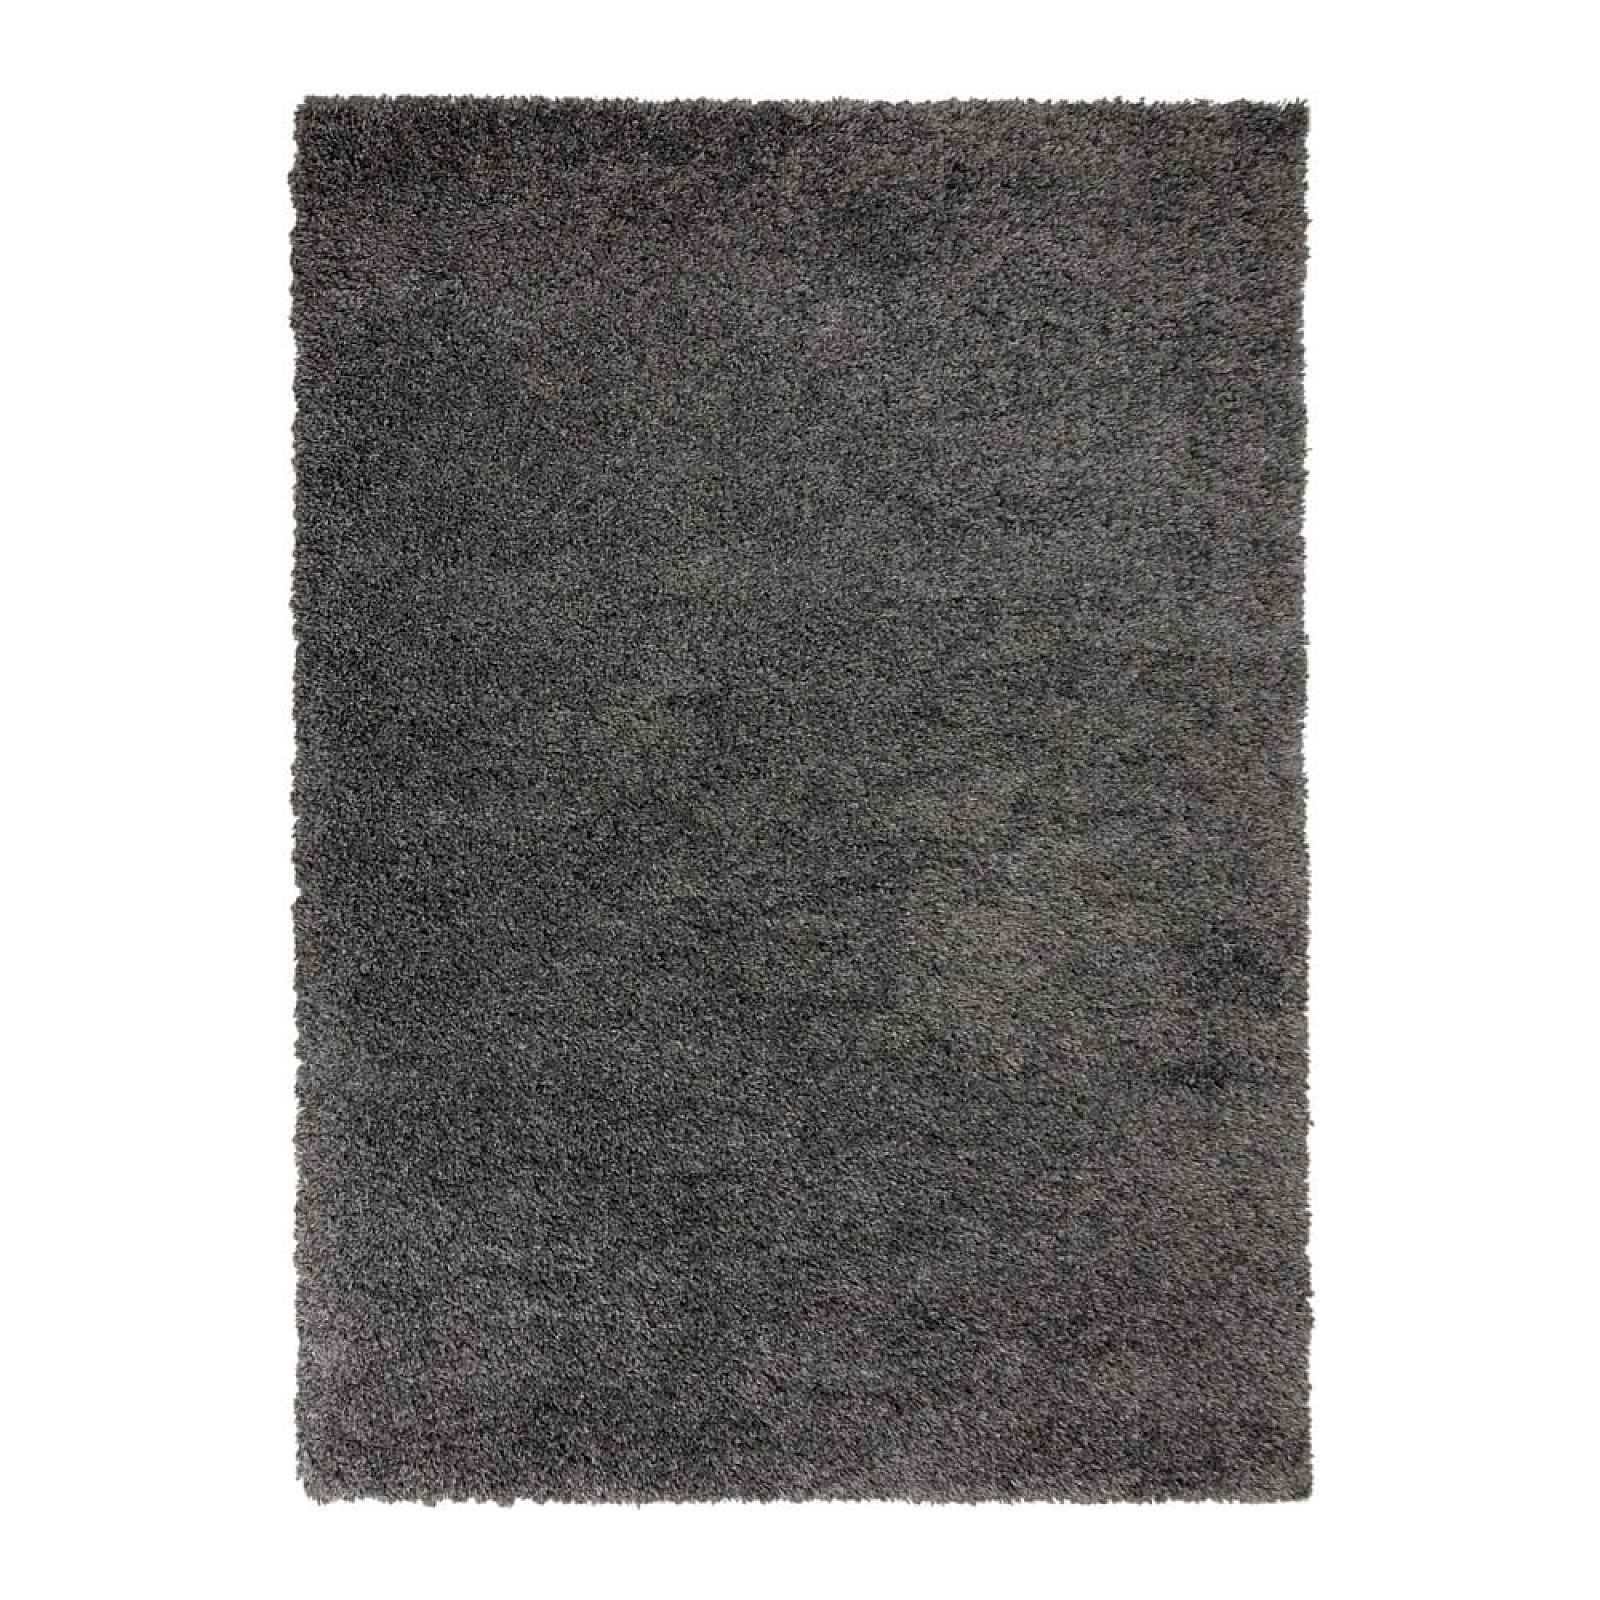 Tmavě šedý koberec Flair Rugs Sparks, 60 x 110 cm